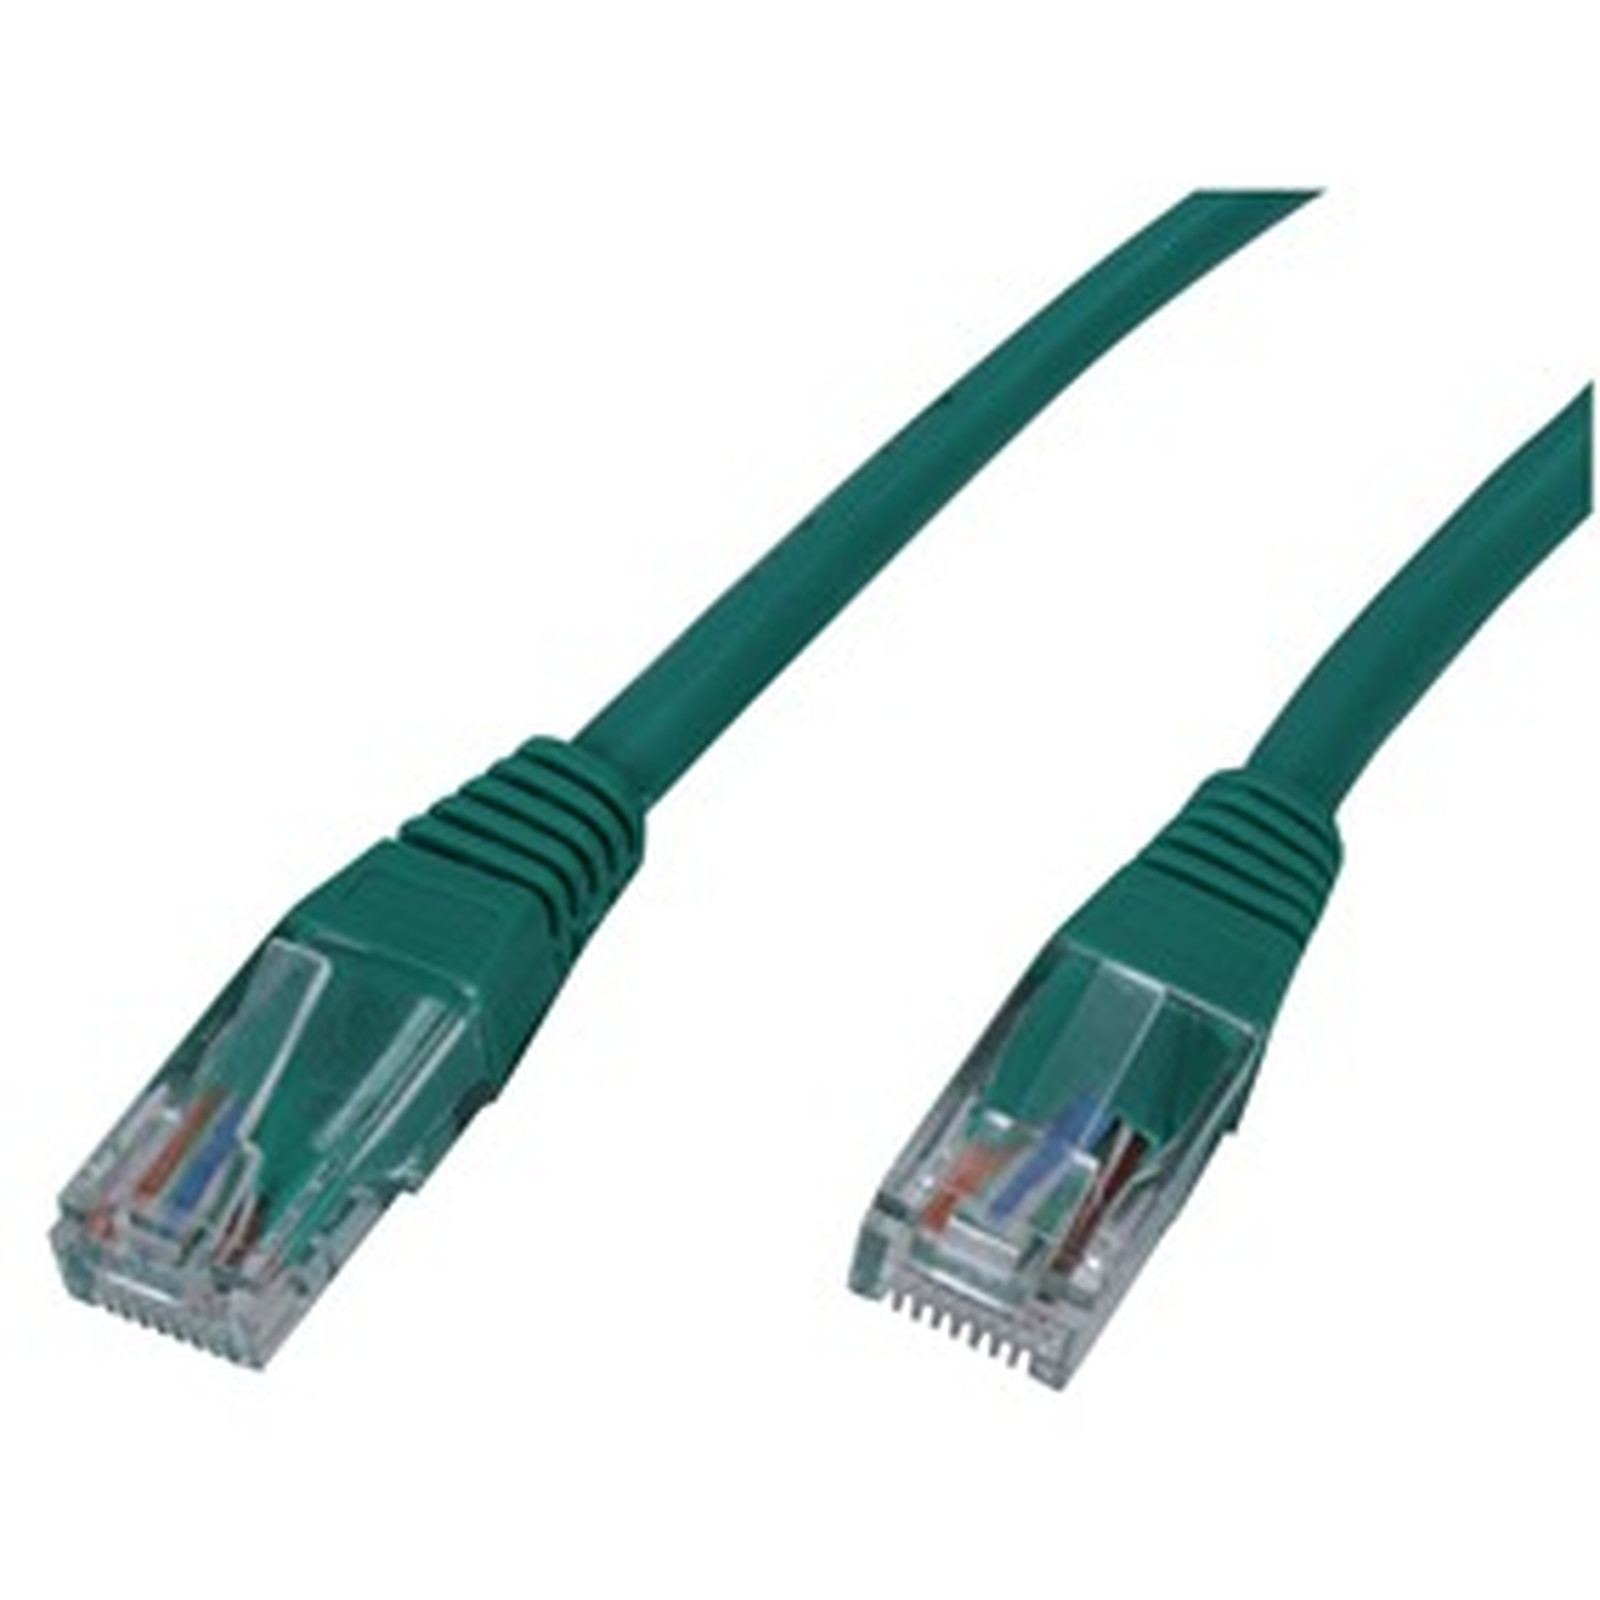 Cable RJ45 categorie 5e U/UTP 3 m (Vert) - Cable RJ45 Generique